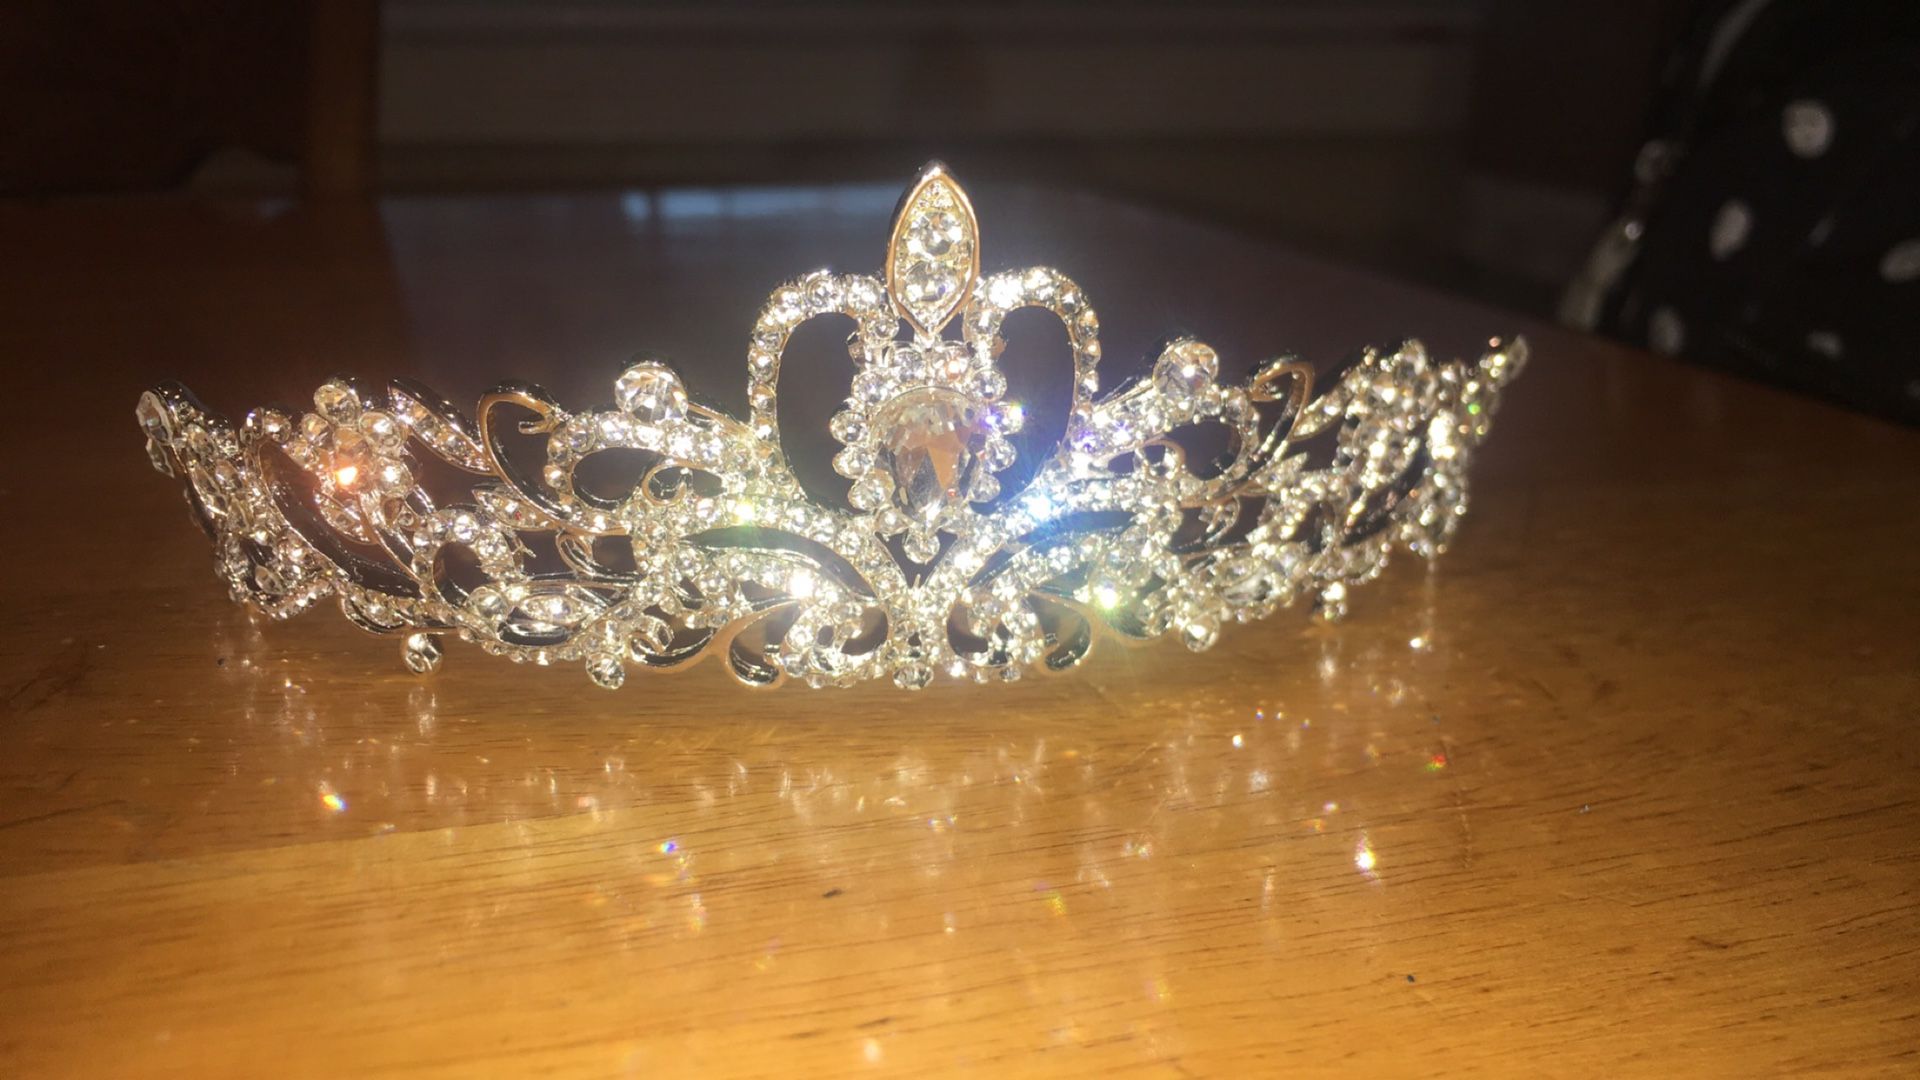 Tiara or crown